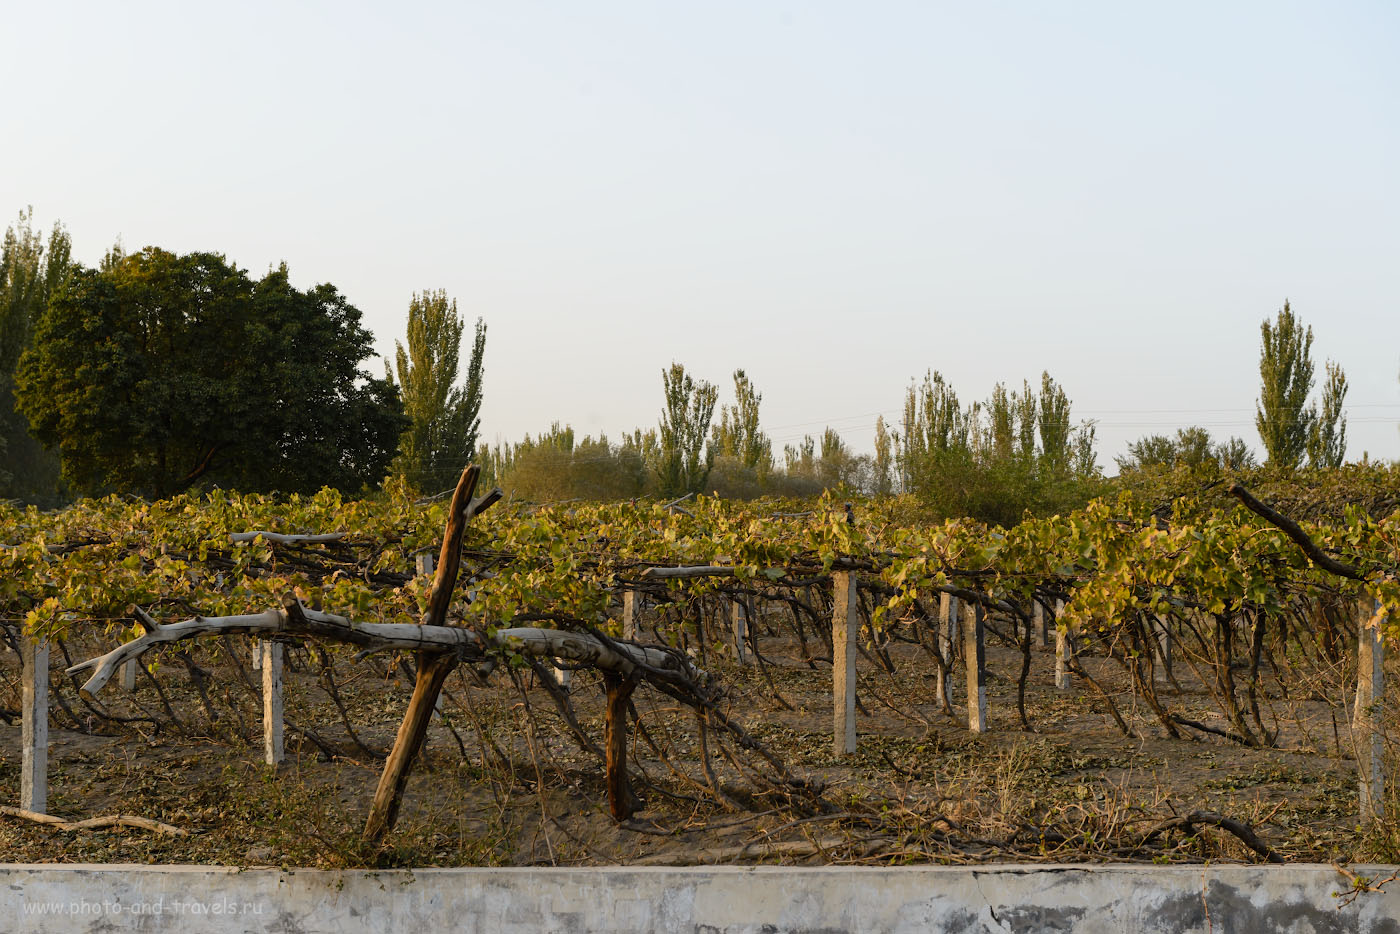 Фото 16. Турфан славится на весь Китай своим виноградом. Отзывы туристов о путешествии в Синьцзян-Уйгурский автономный регион. Интересные места в окрестностях Урумчи. 1/125, -1.0, 8.0, 320, 62.